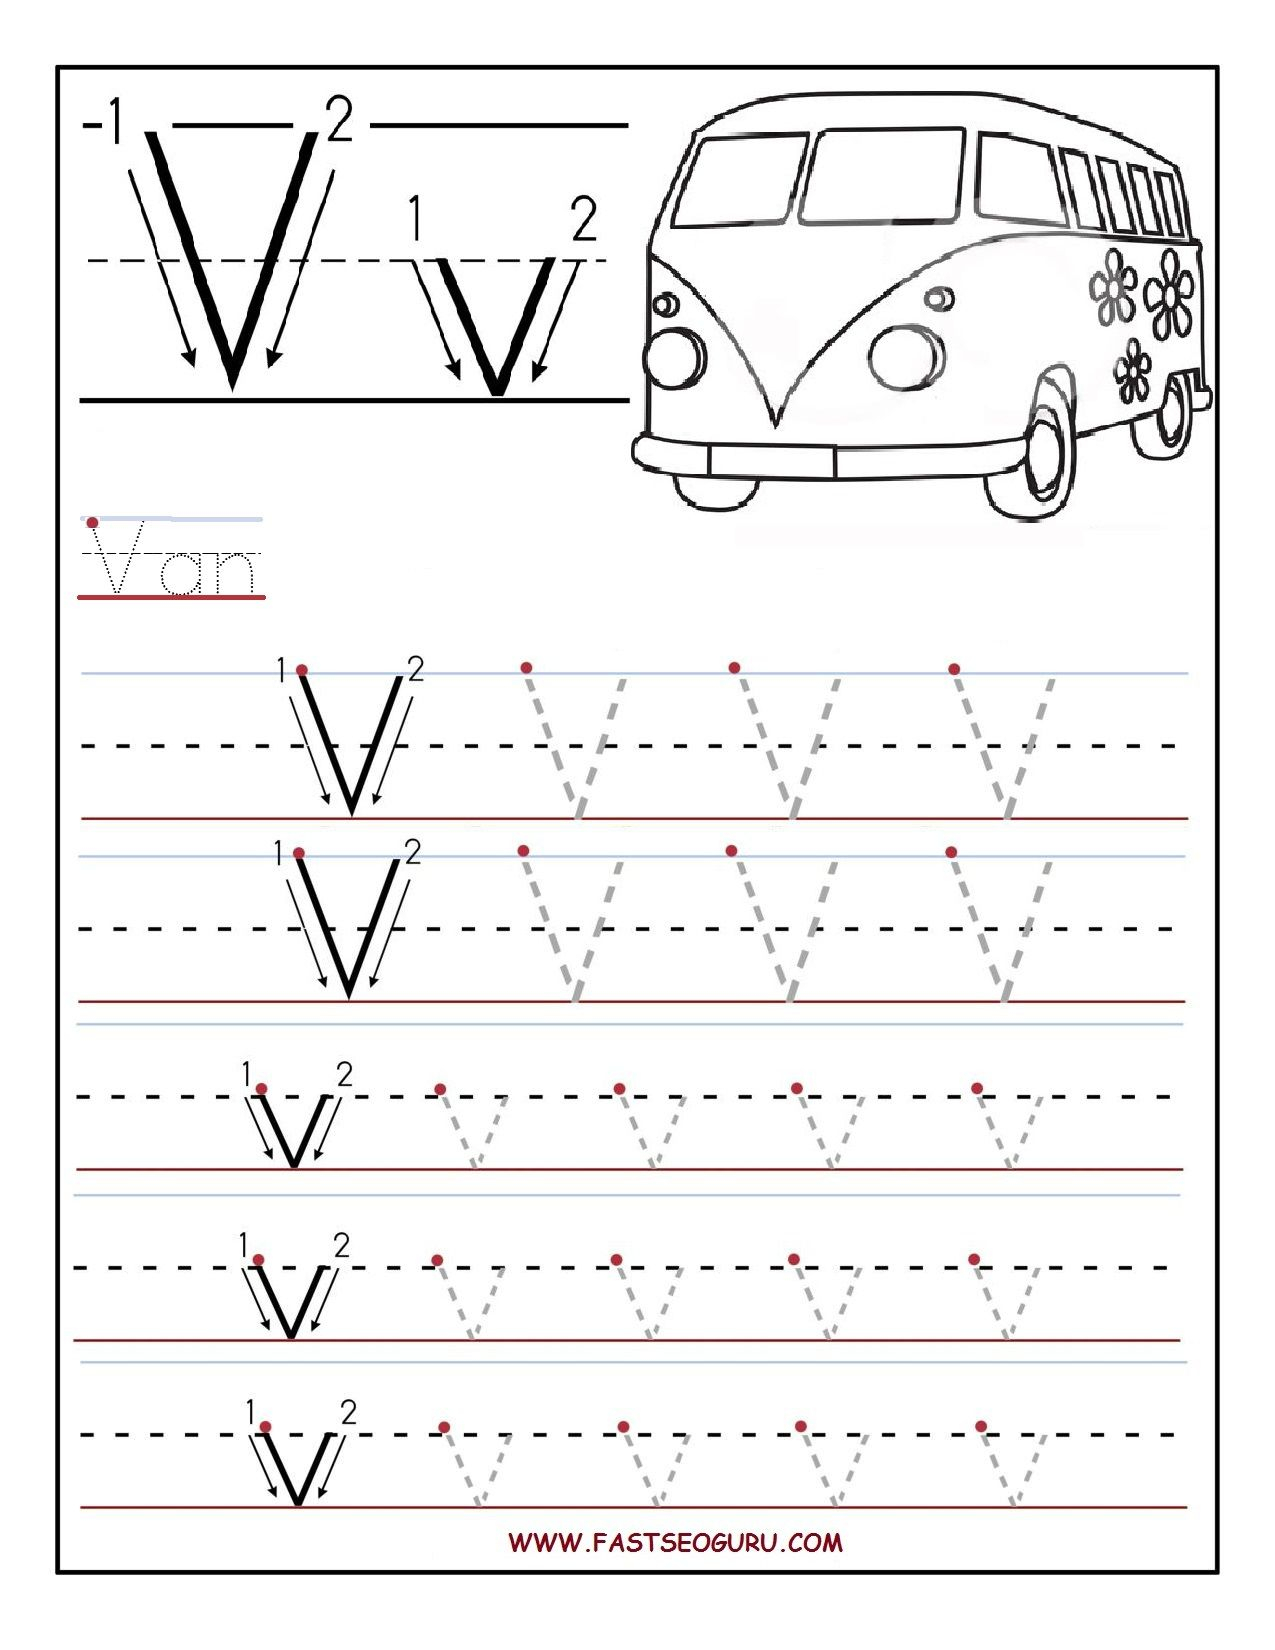 Printable Letter V Tracing Worksheets For Preschool with Letter V Worksheets Pdf